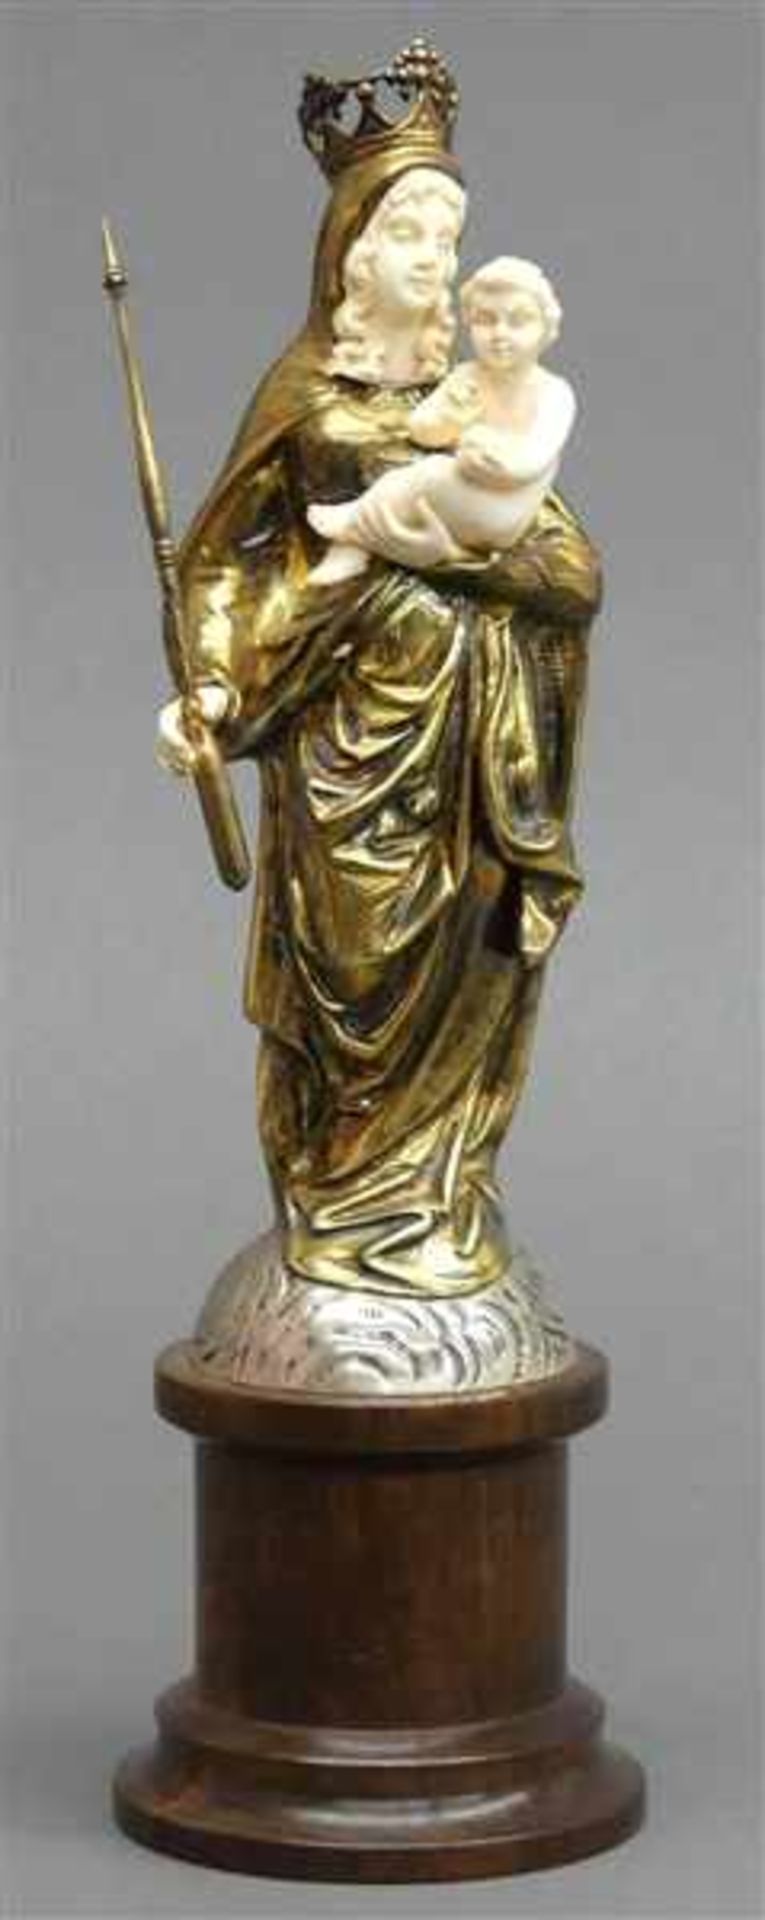 Silberskulptur800 punziert, bekrönte Madonna mit Jesuskind, Gesicht, Hände und Jesu aus Elfenbein,